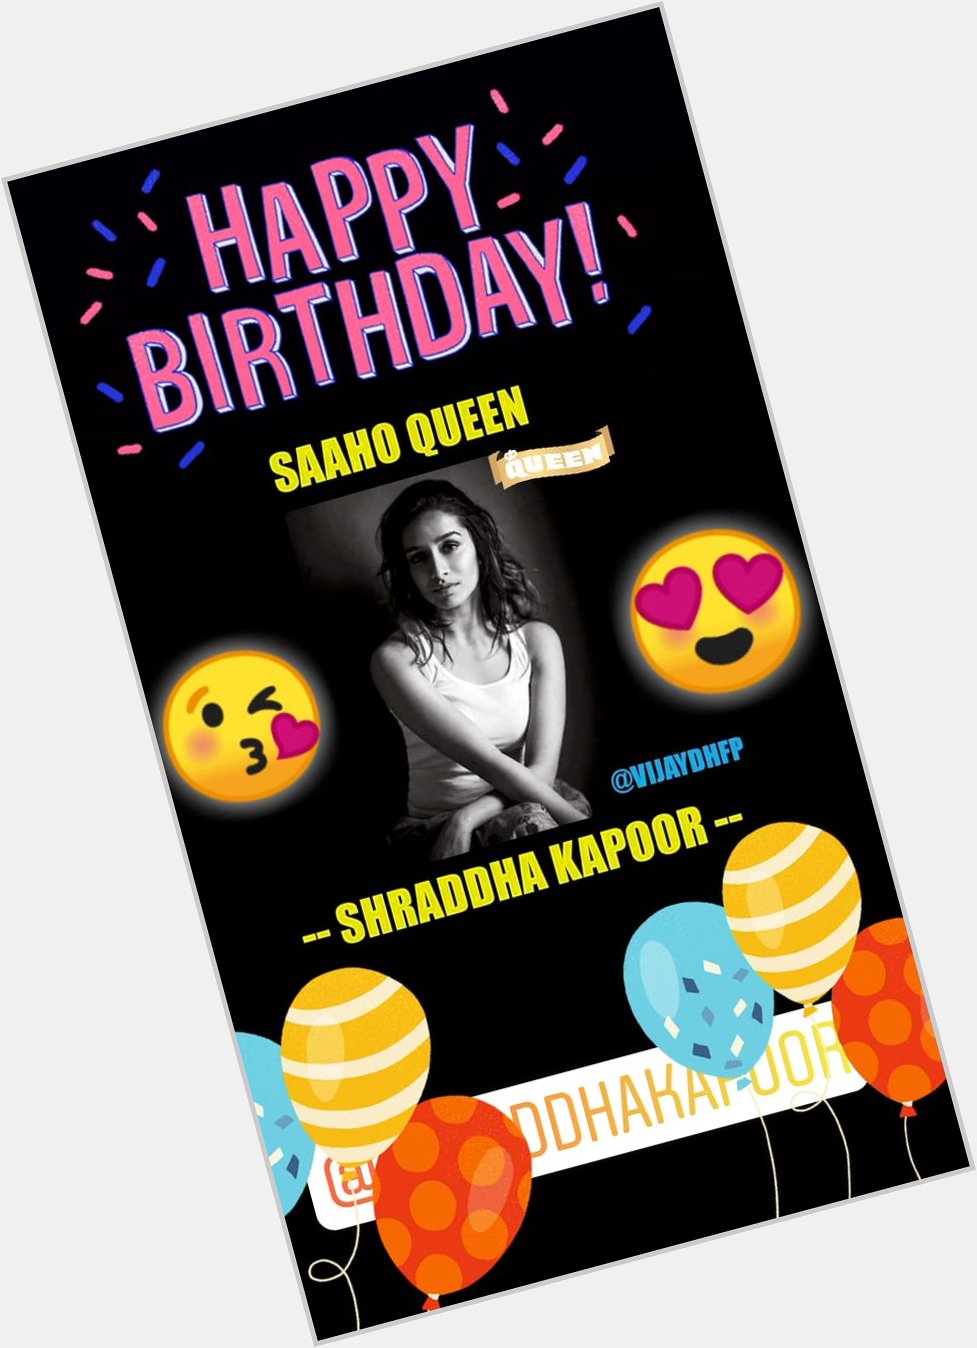 Happy Birthday Shraddha Kapoor ji 